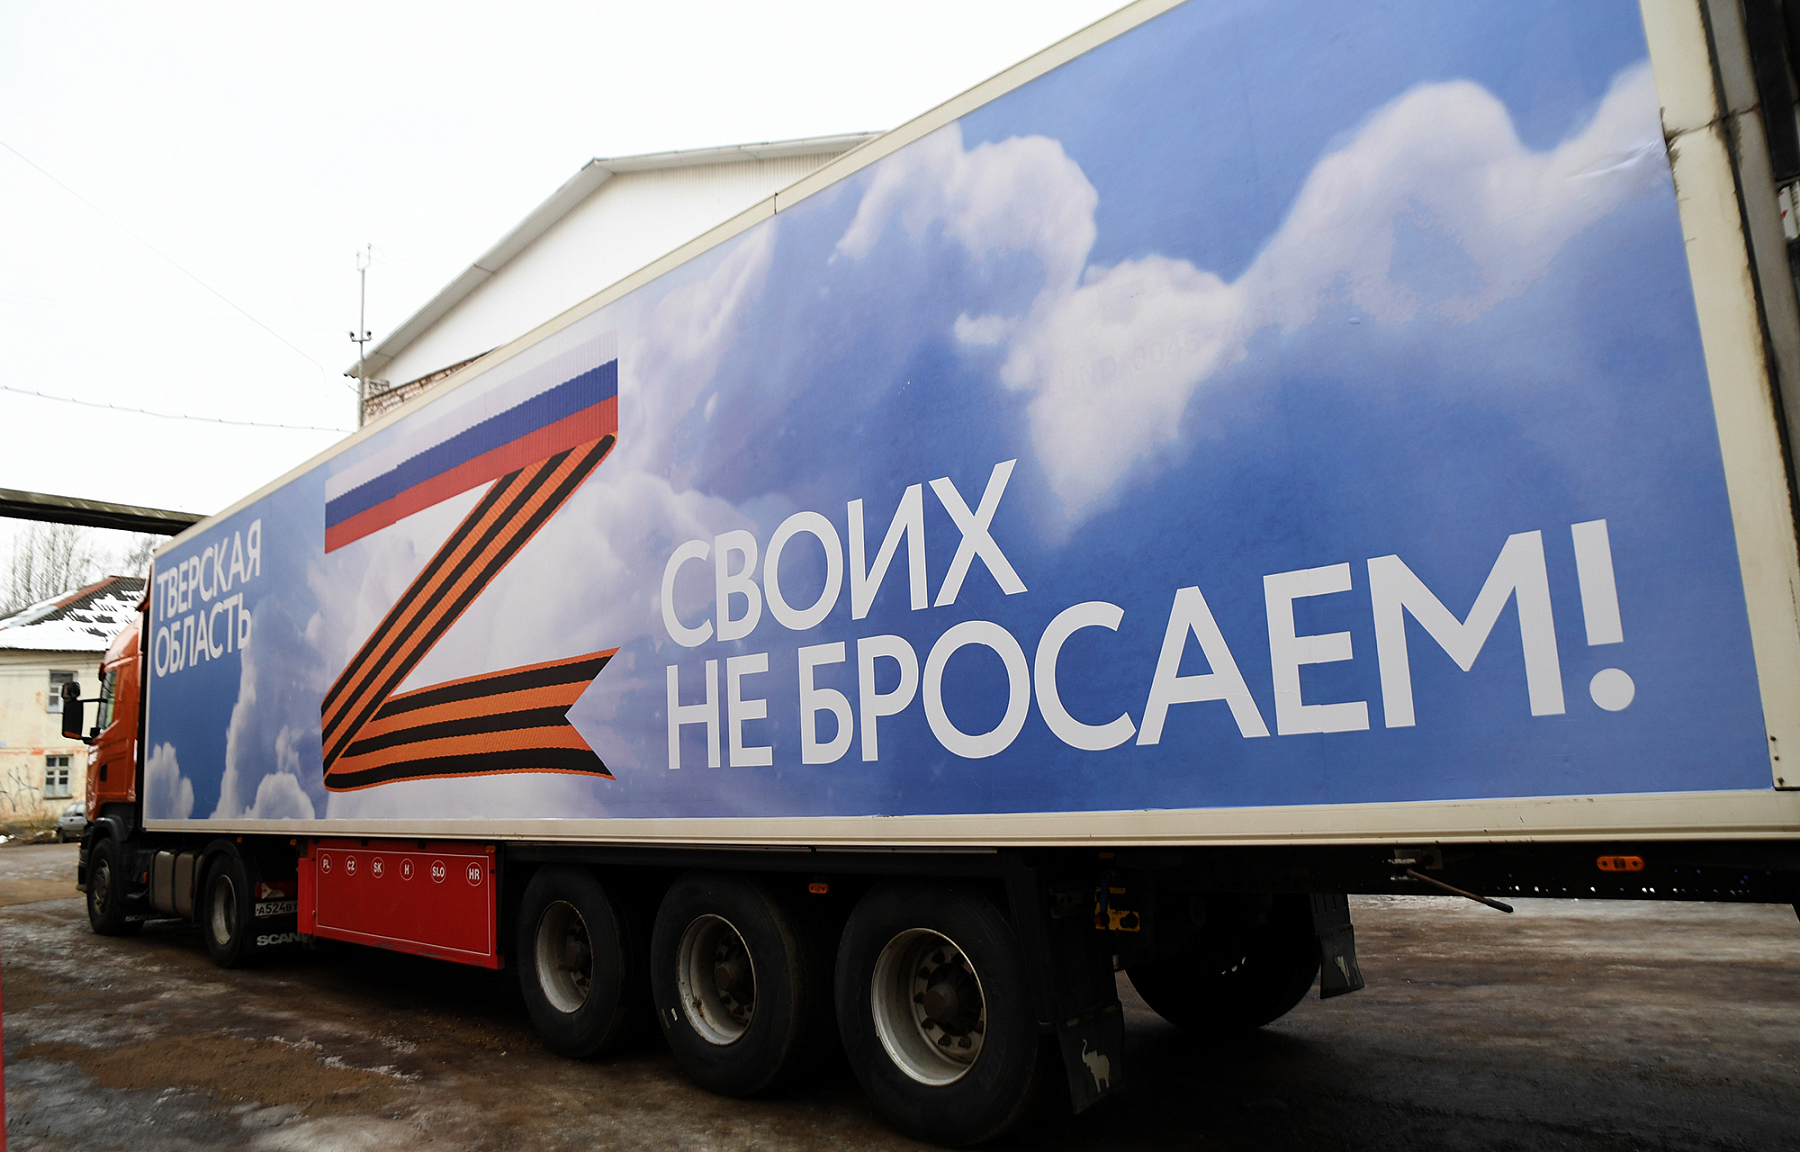 Открытки и денежные пожертвования: что россияне могут передать жителям Донбасса через гумпроект «Тыл»